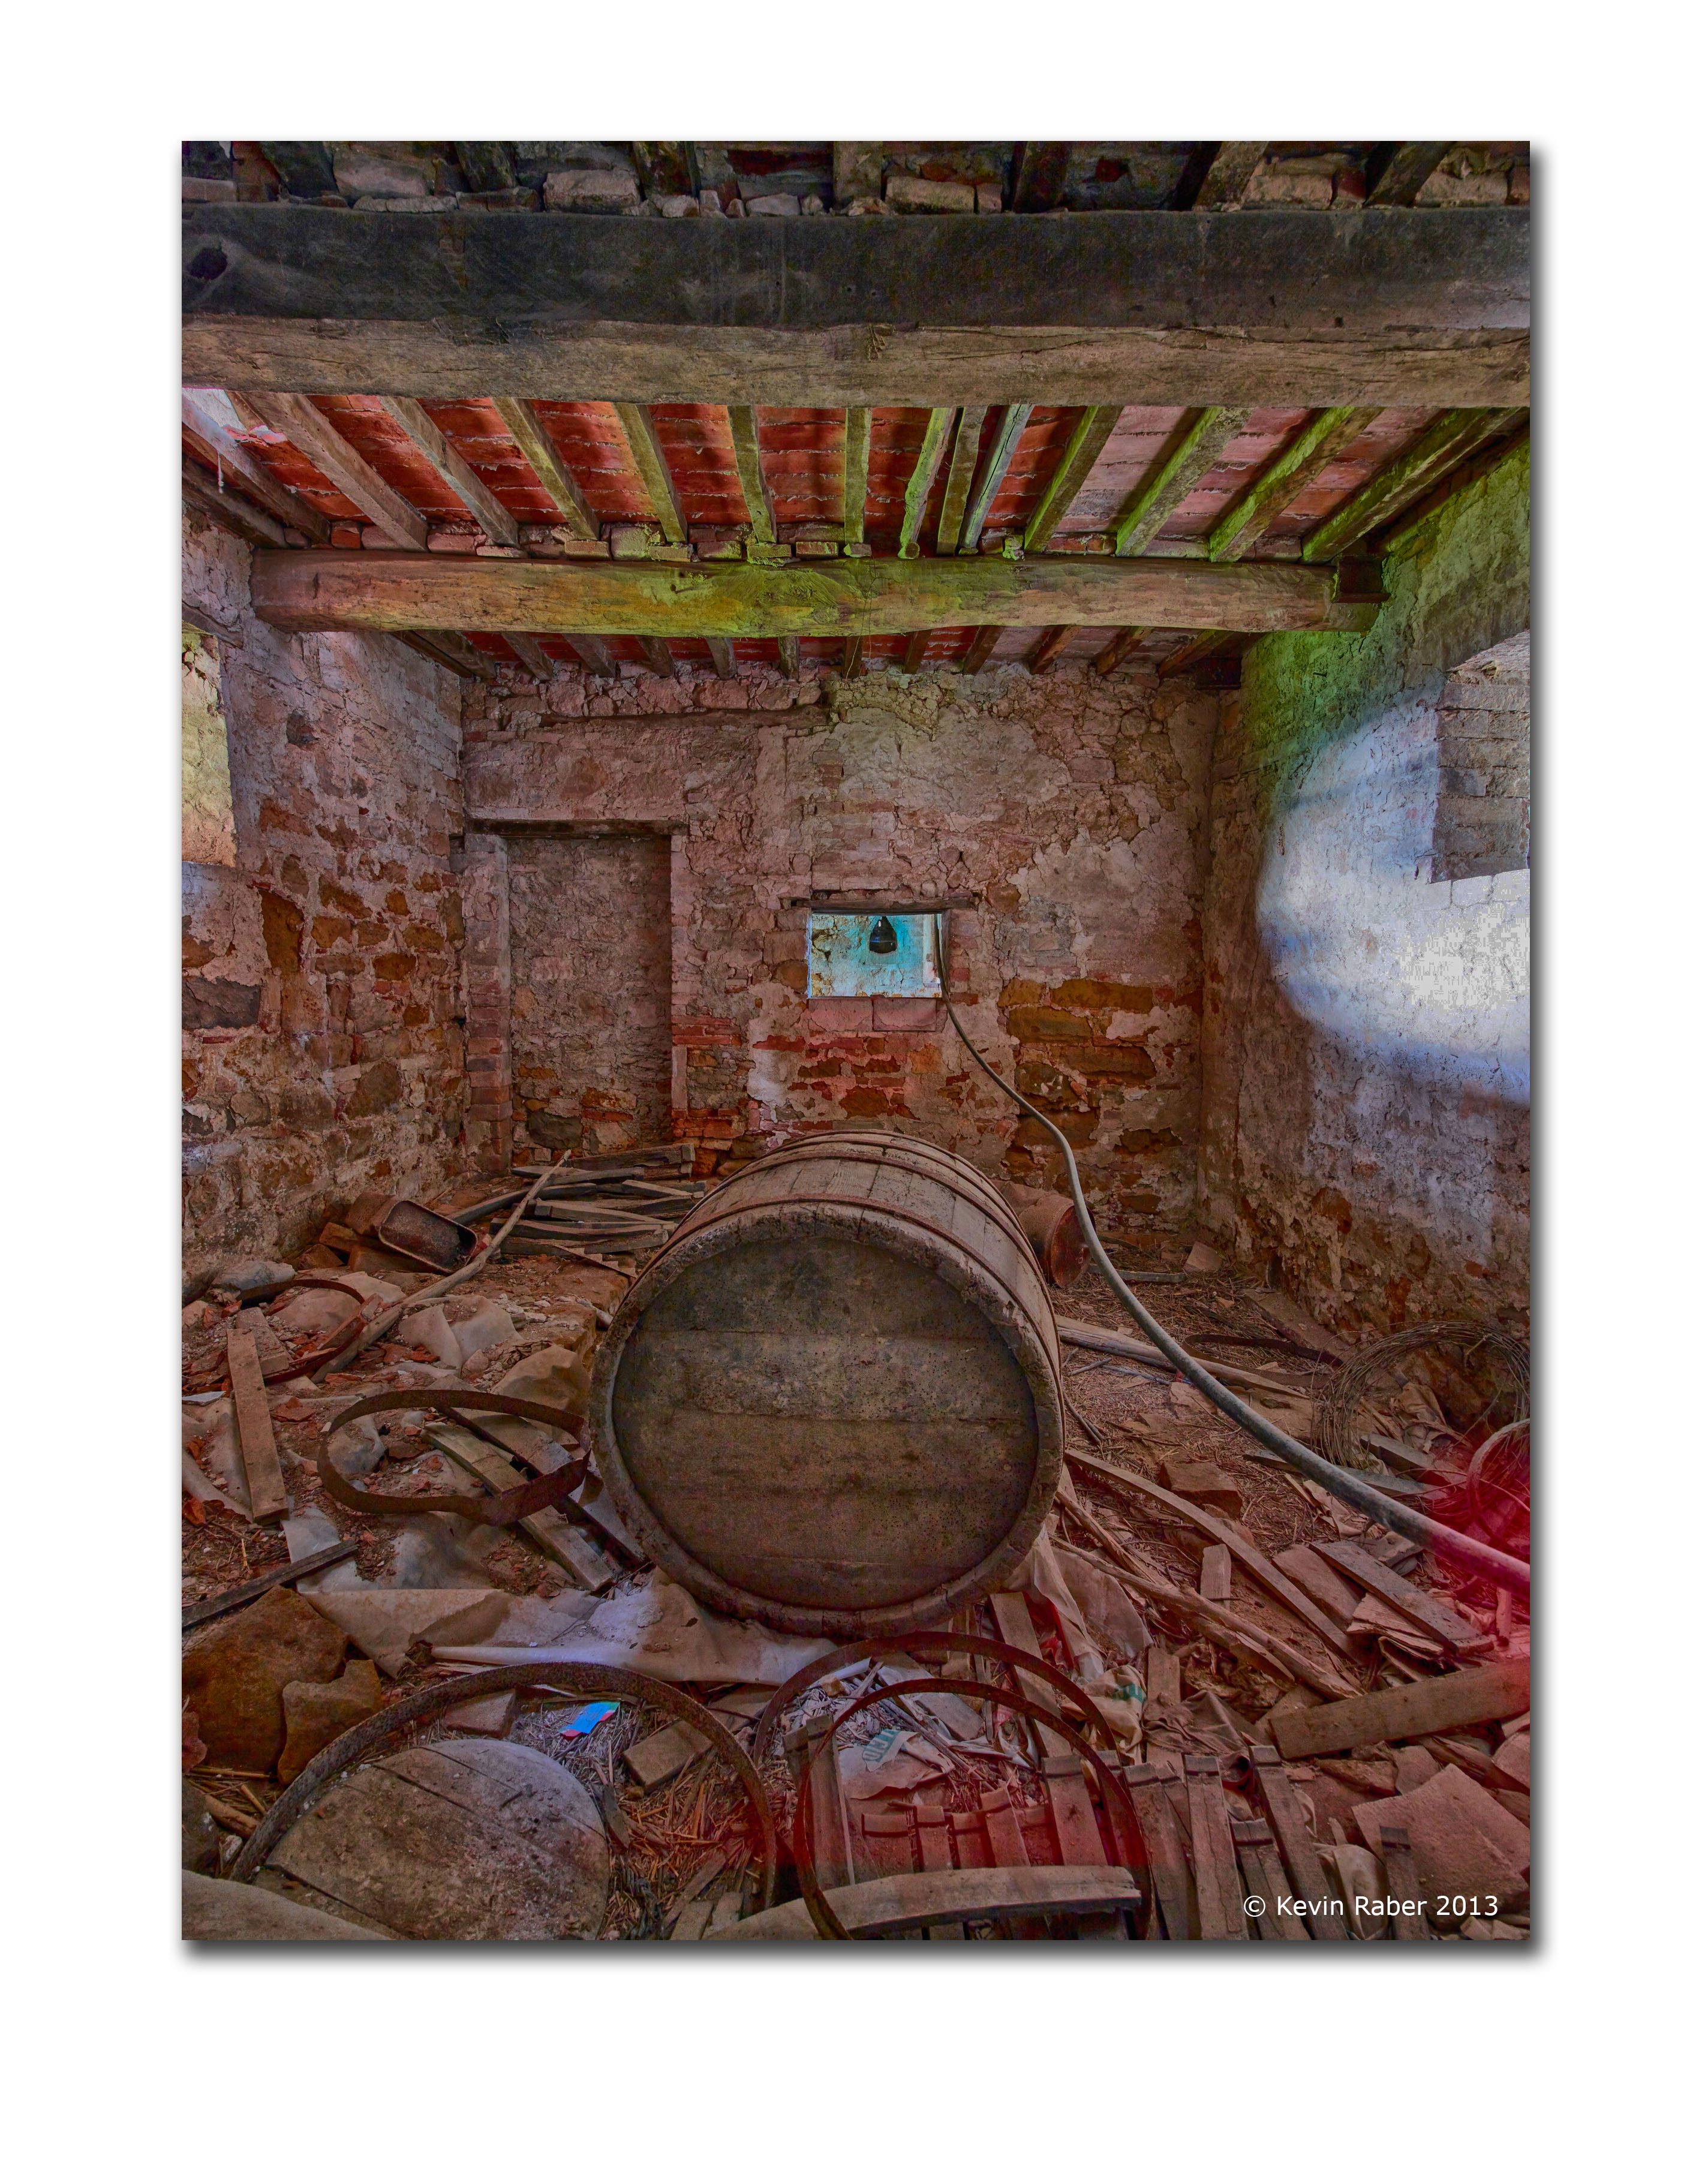 Barrel Room, Abandoned Farm House, Tuscany, Italy